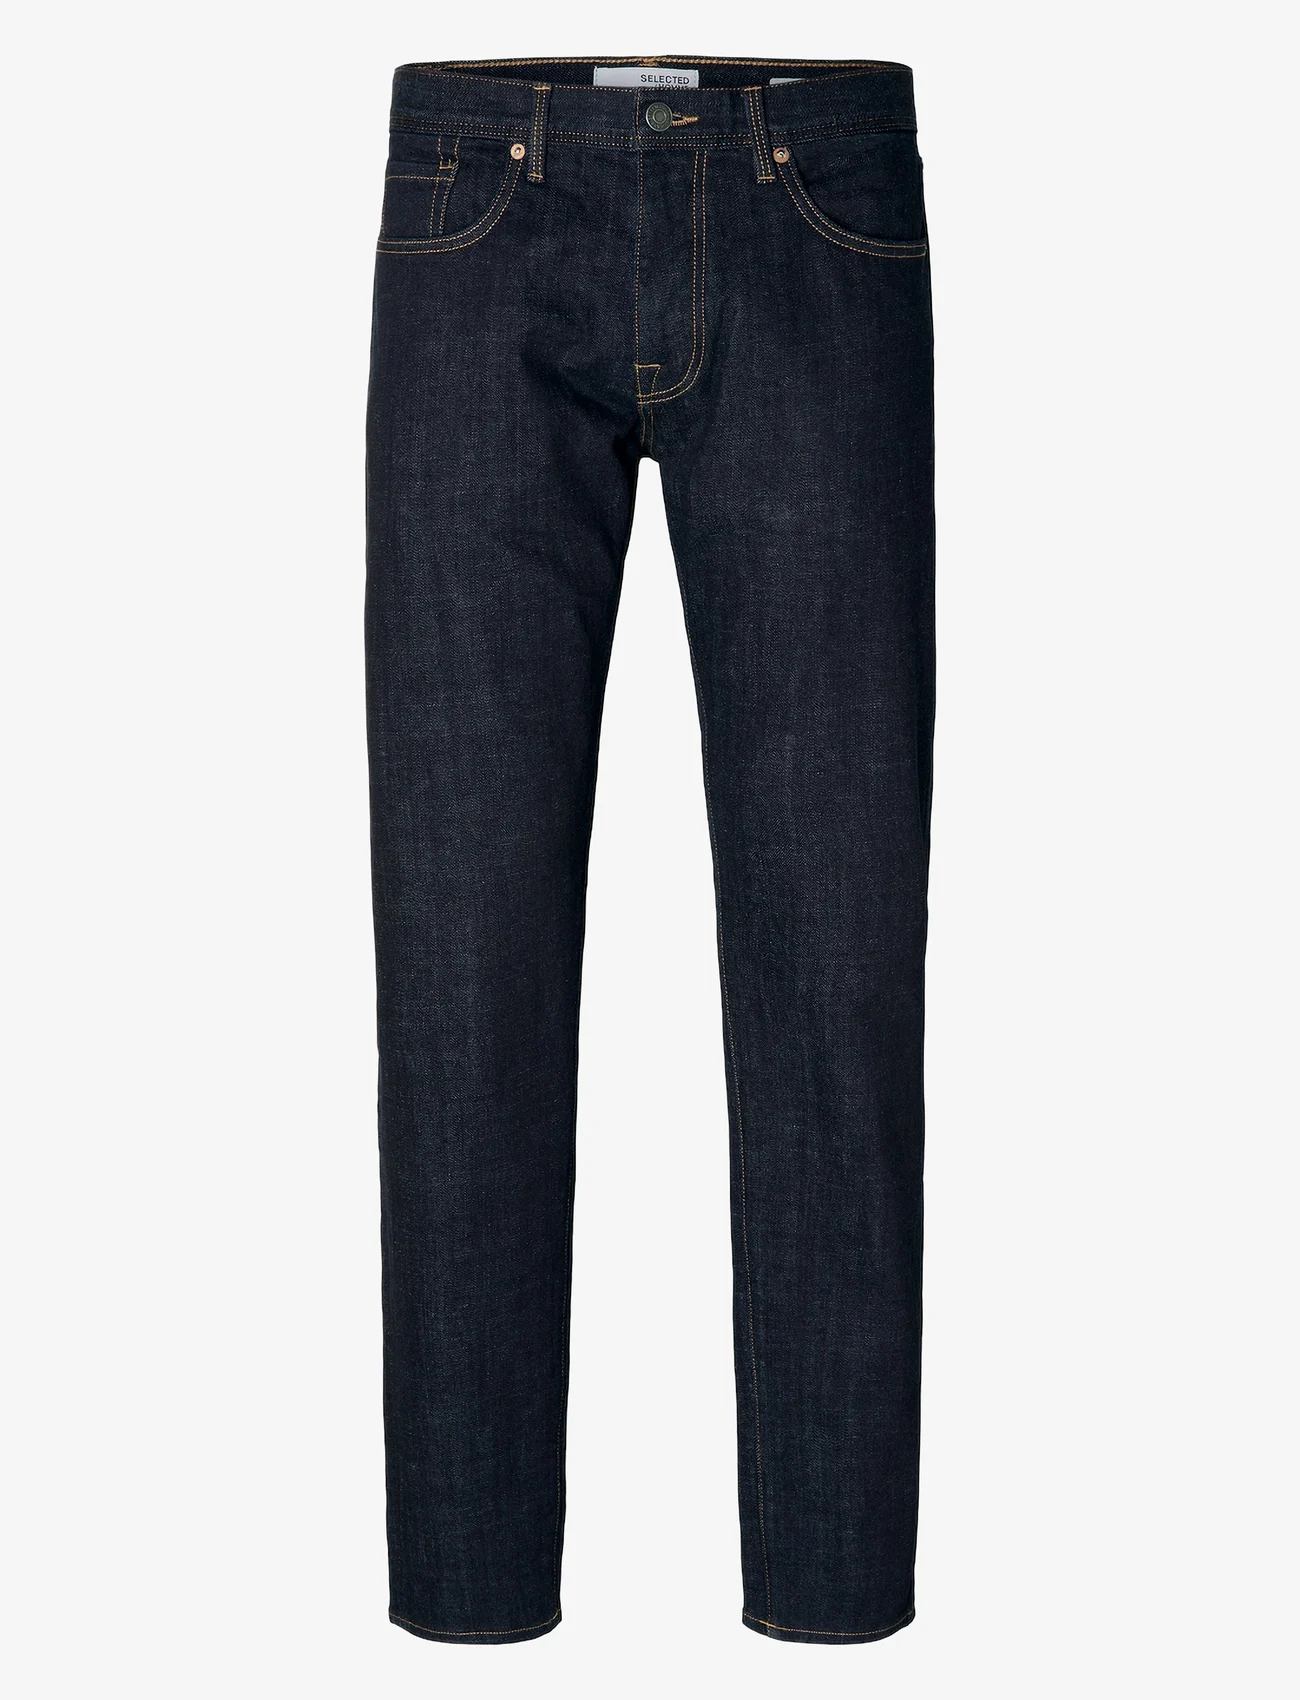 Selected Homme - SLHSLIM-LEON 6291 D,B SUPERST JNS U - slim jeans - dark blue denim - 1